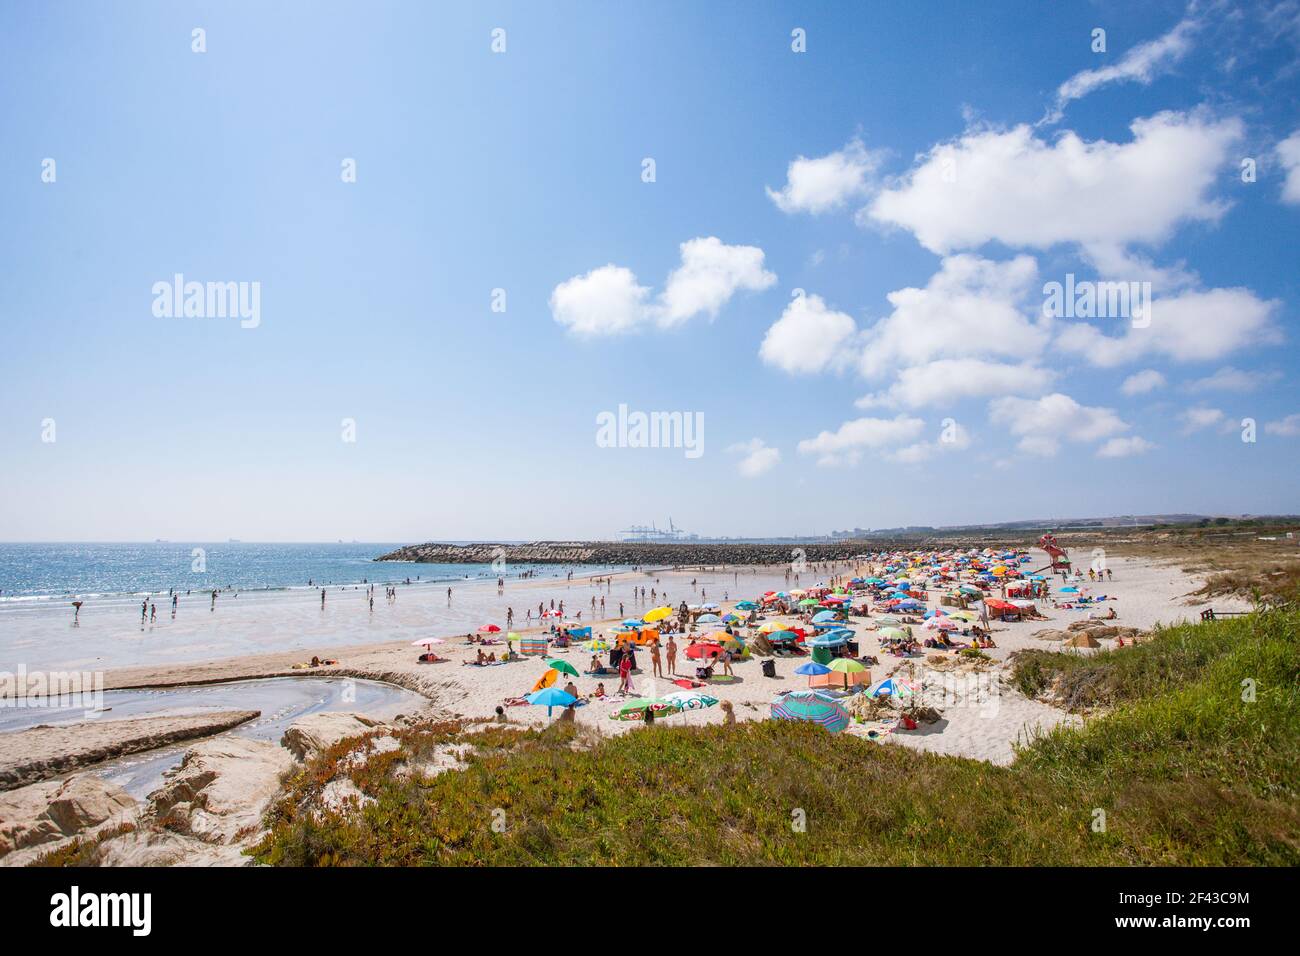 Praia de São Torpes, près de Sines, sur la côte atlantique de l'Alentejo, Portugal Banque D'Images